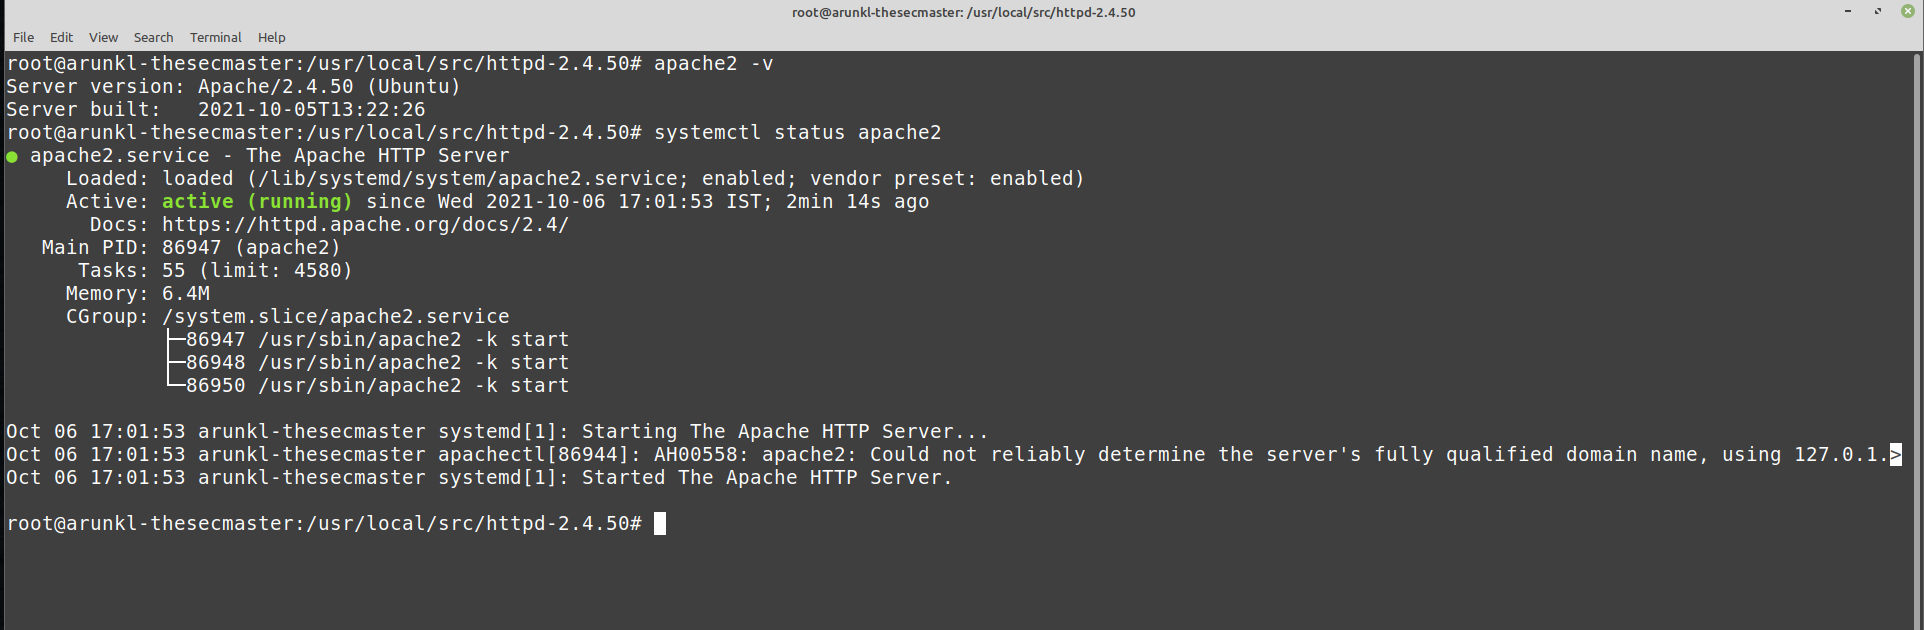 Upgrade Apache On Ubuntu